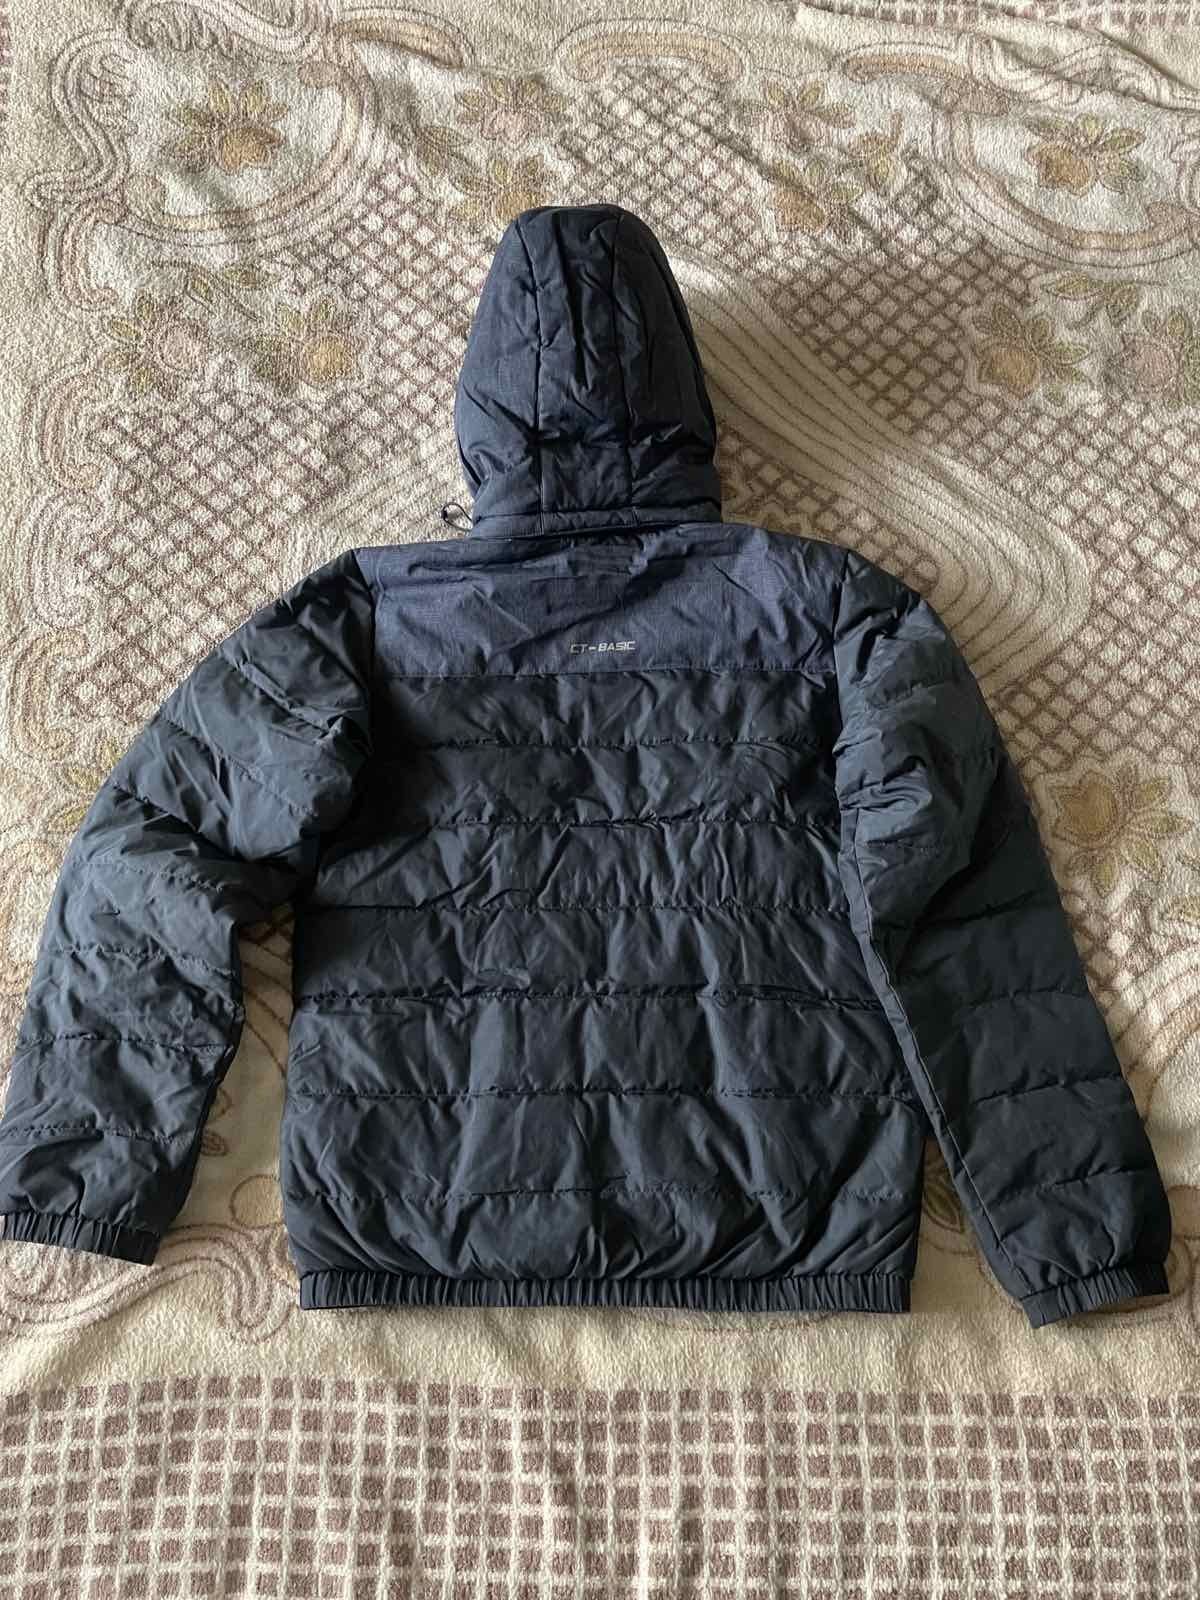 Зимова куртка для чоловіків або підлітків.